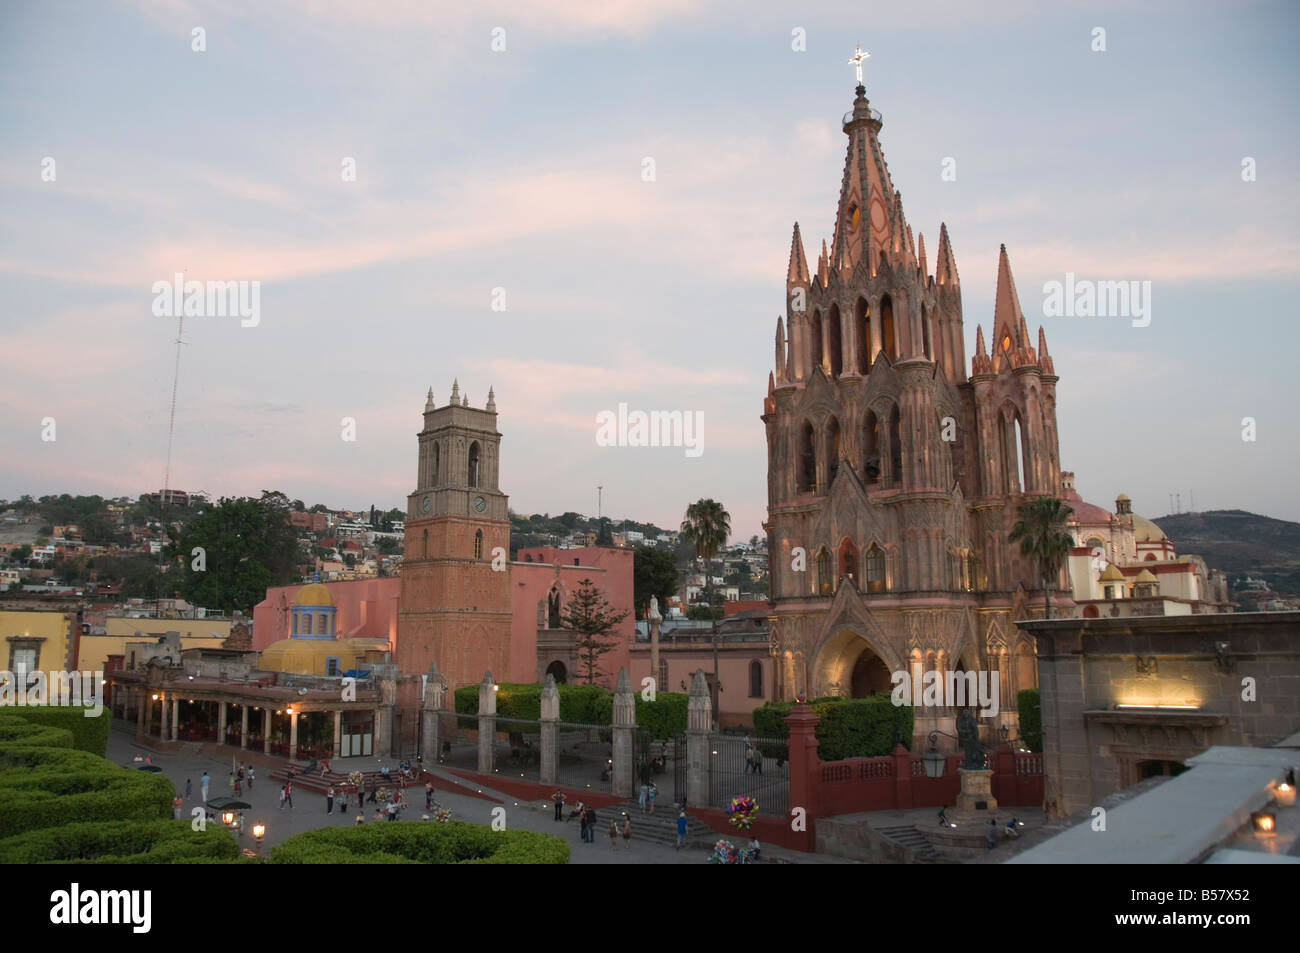 La Parroquia, chiesa degna di nota per la sua fantastica esterno neogotico, San Miguel De Allende (San Miguel), stato di Guanajuato, Messico Foto Stock